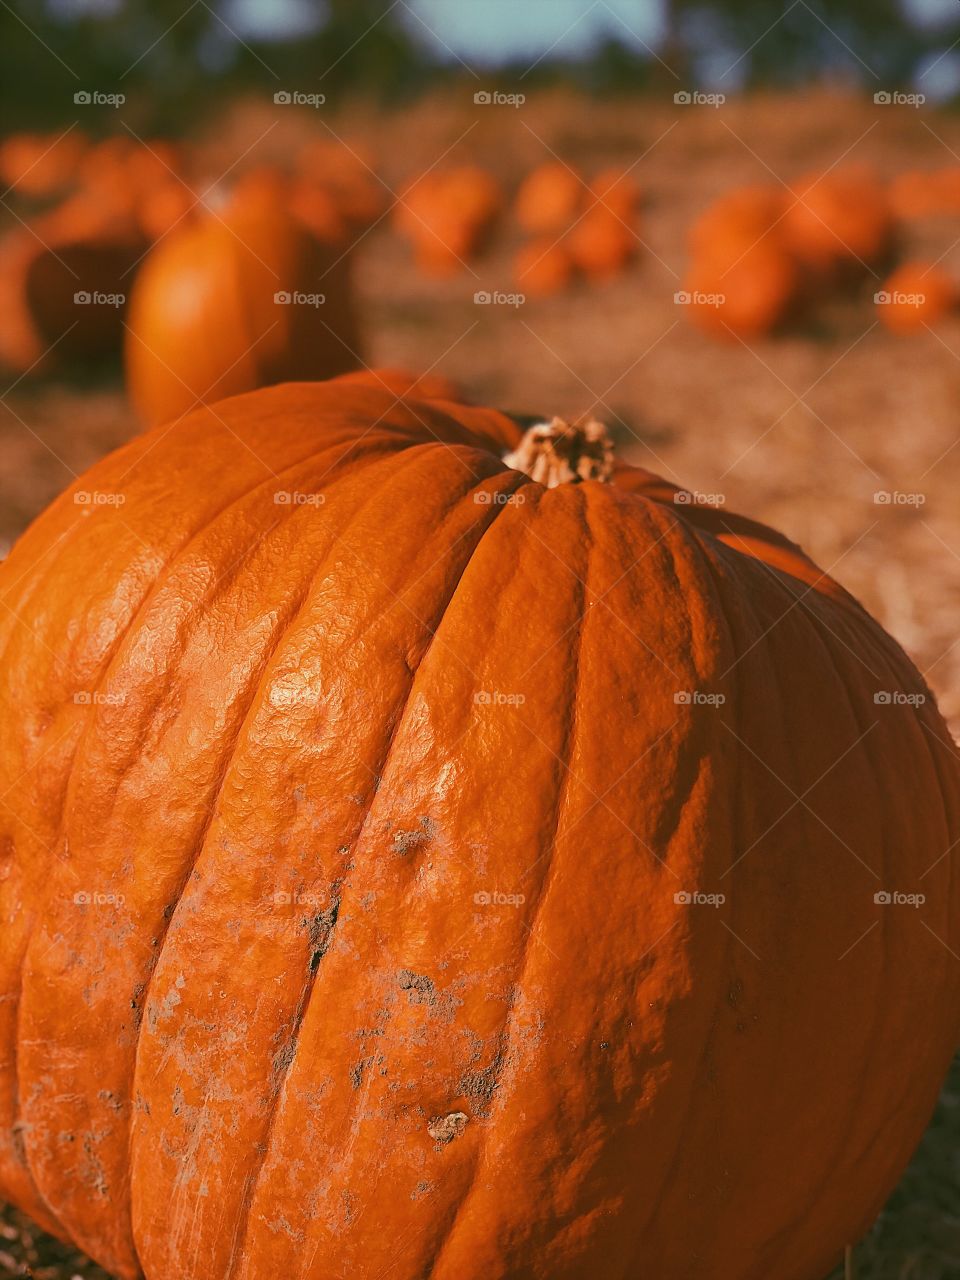 Pumpkin depth affect 